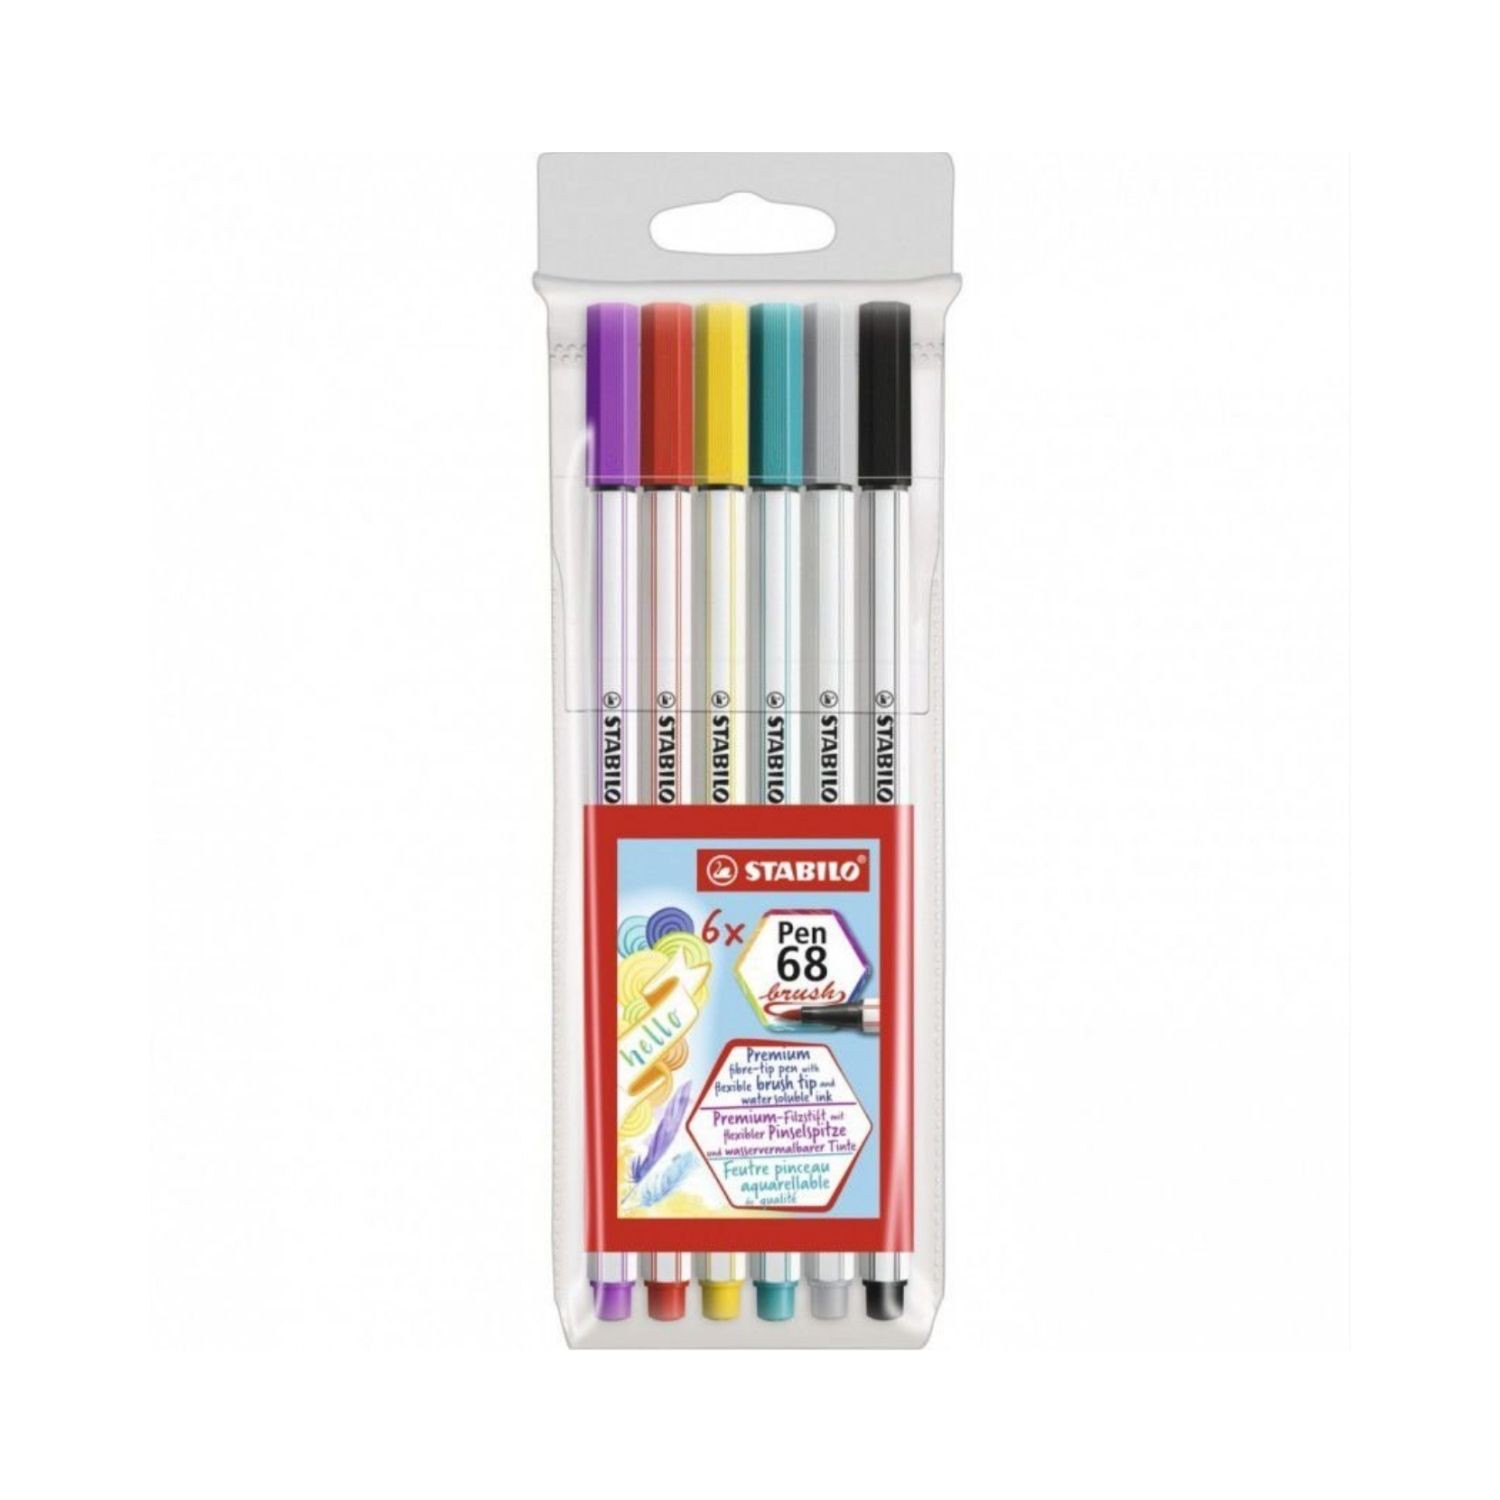 Brush Pen 68 Stabilo c/ 6 cores